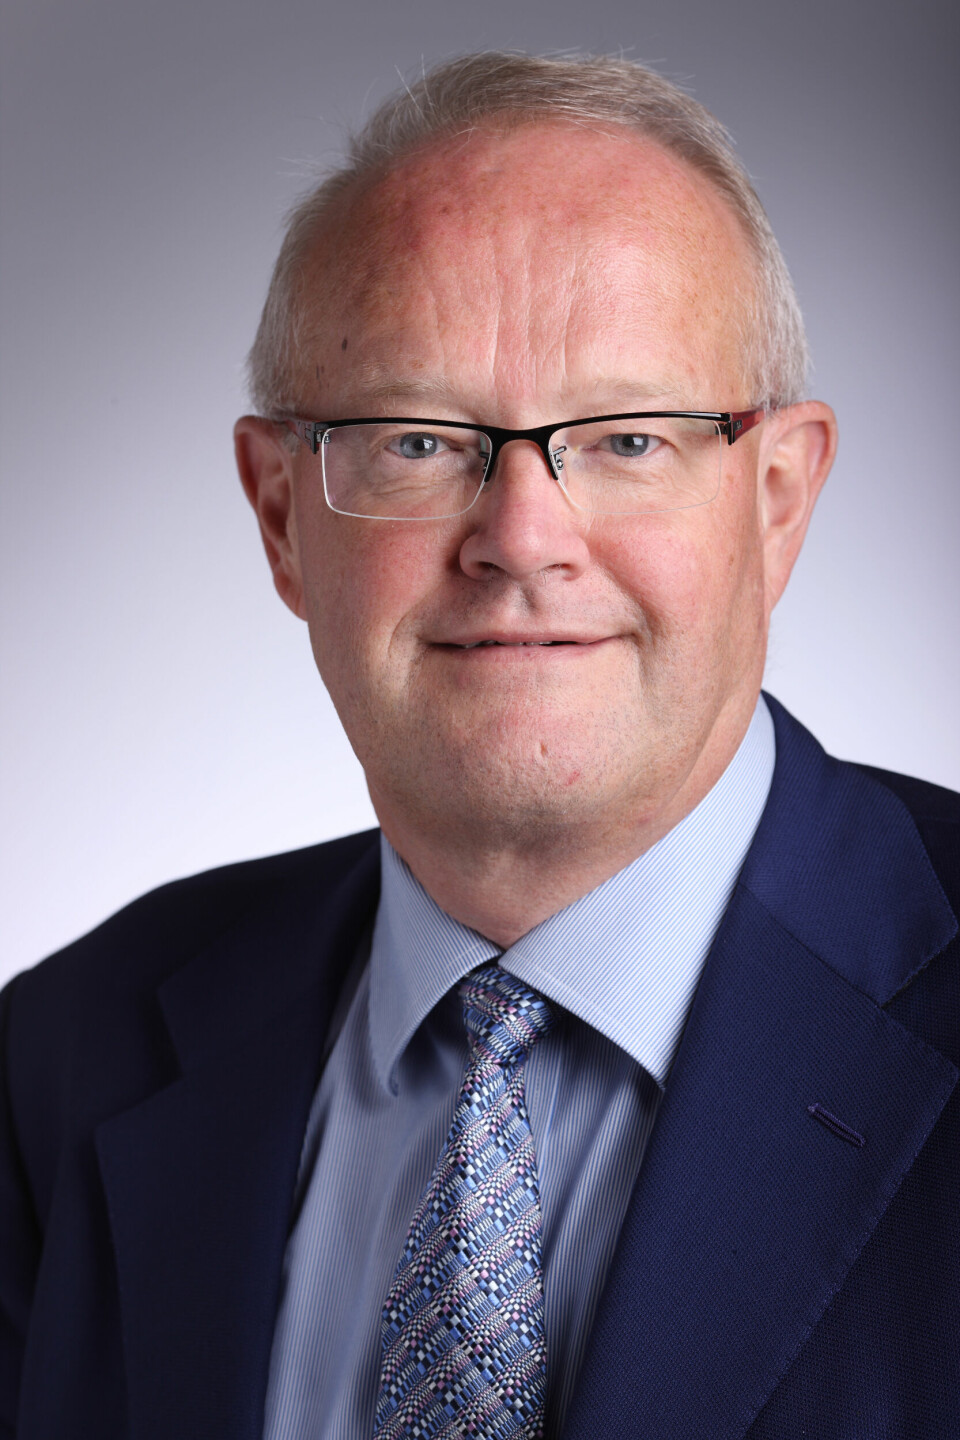 Tidligere SFI-direktør Jørgen Søndergaard skal være formand for det nye udvalg. Han er også formand for Skolerådet og har siddet i spidsen for ministeriets Rejsehold.